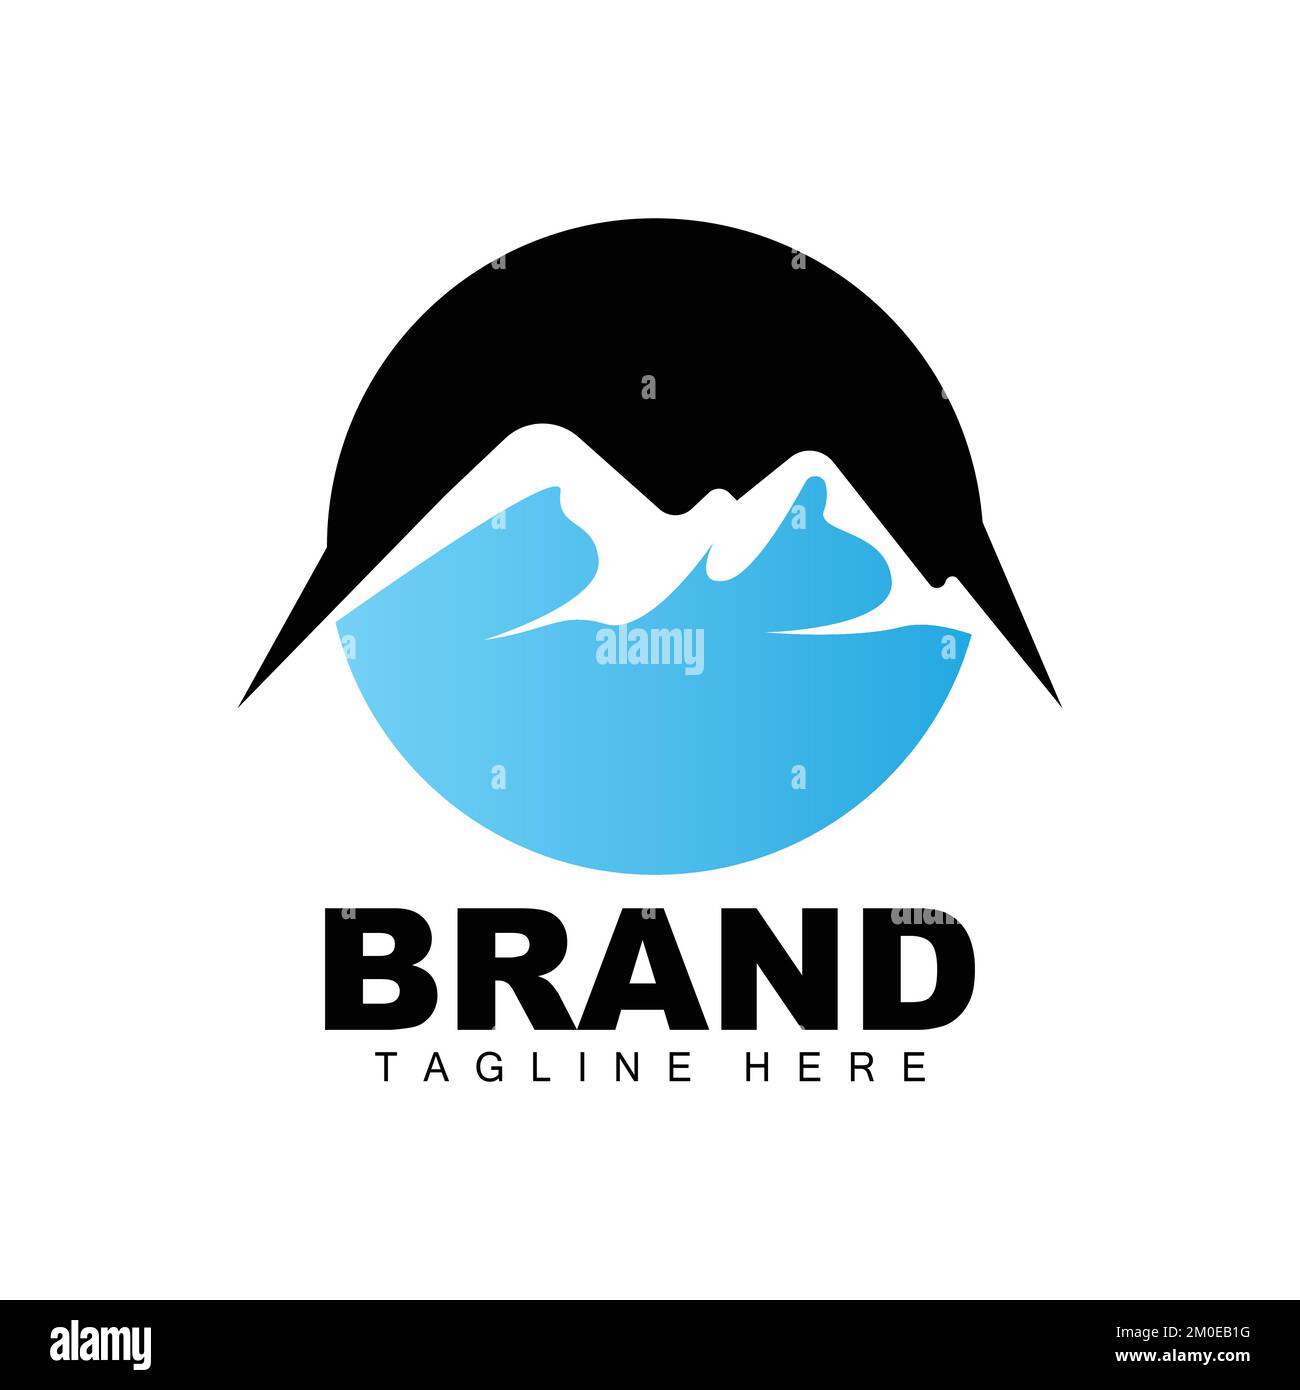 Mountain Logo, Vector Mountain Climbing, Adventure, Design For Climbing, Climbing Equipment, And Brand With Mountain Logo Stock Vector